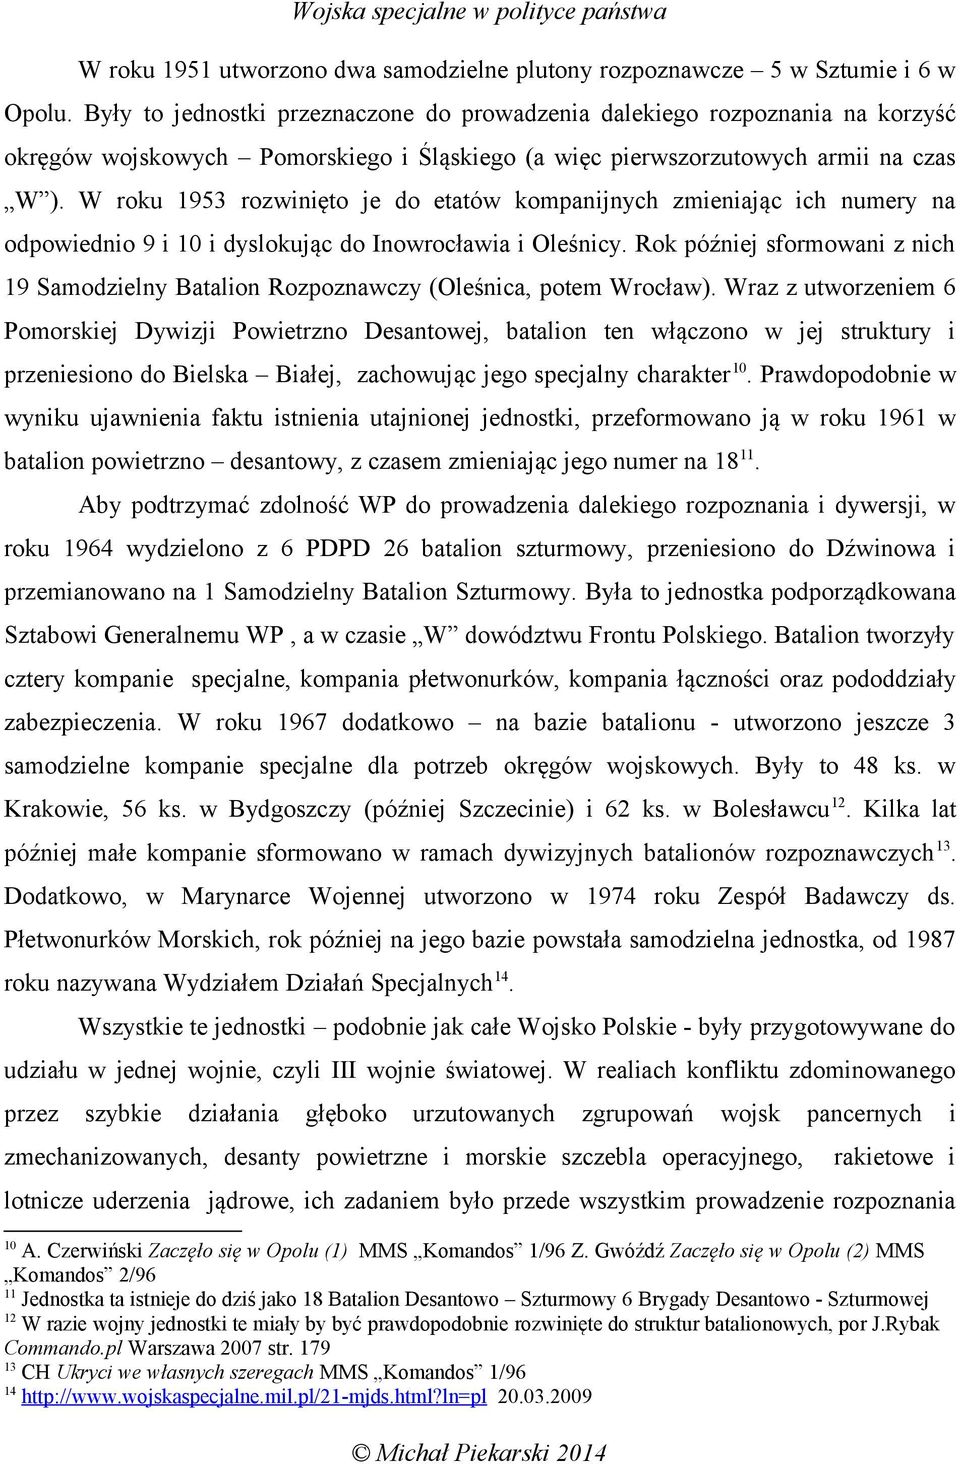 W roku 1953 rozwinięto je do etatów kompanijnych zmieniając ich numery na odpowiednio 9 i 10 i dyslokując do Inowrocławia i Oleśnicy.